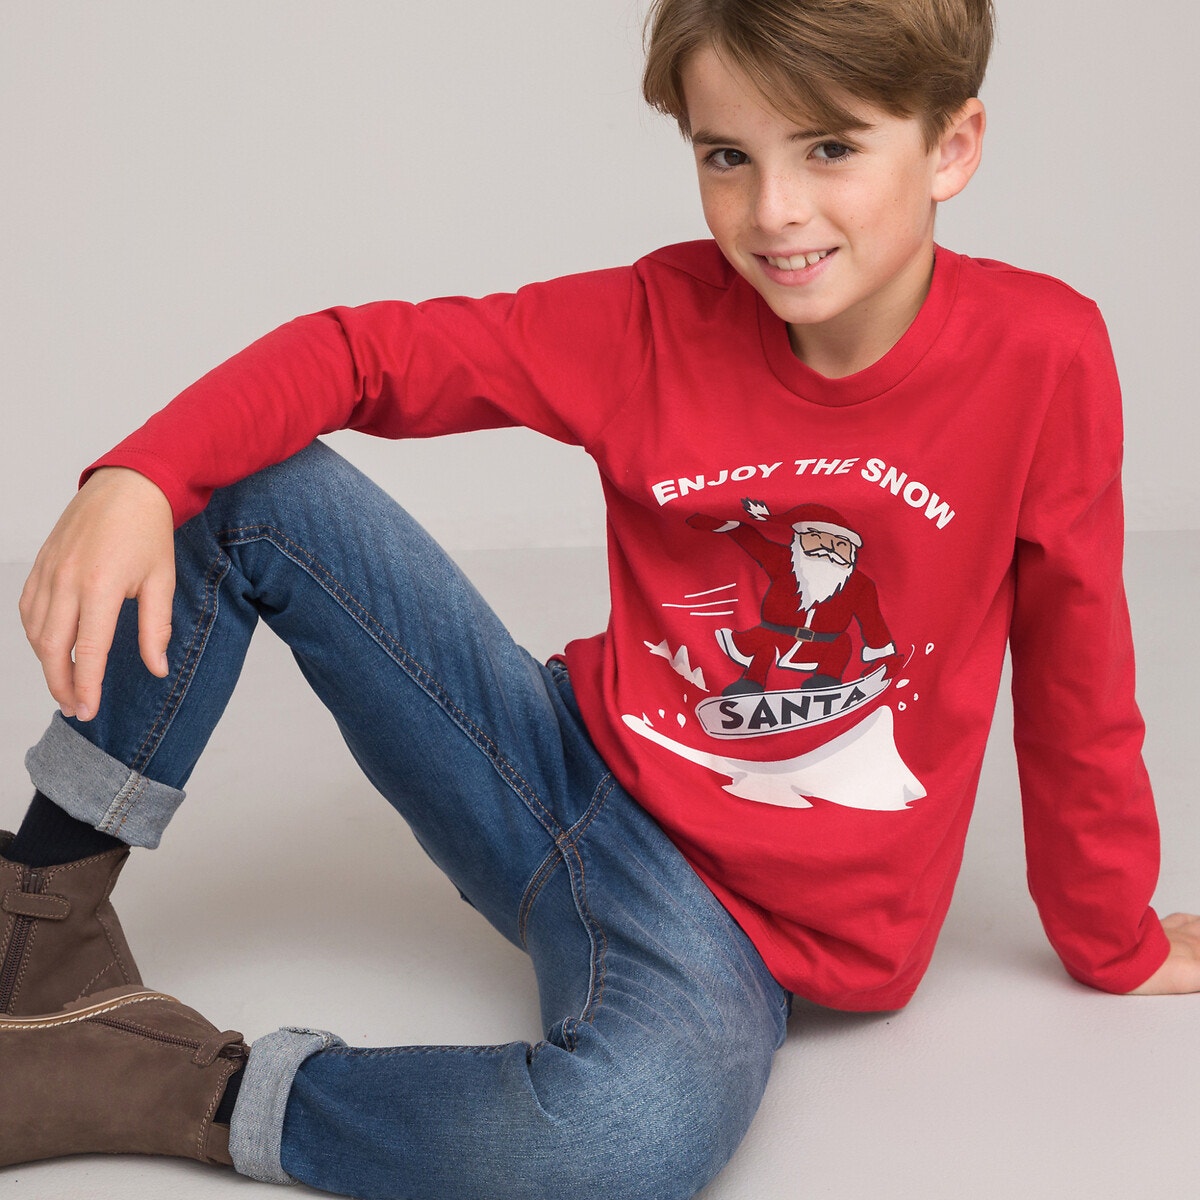 Μόδα > Παιδικά > Αγόρι > T-shirt, πόλο > Μακριά μανίκια Μακρυμάνικη μπλούζα με χριστουγεννιάτικο μοτίβο